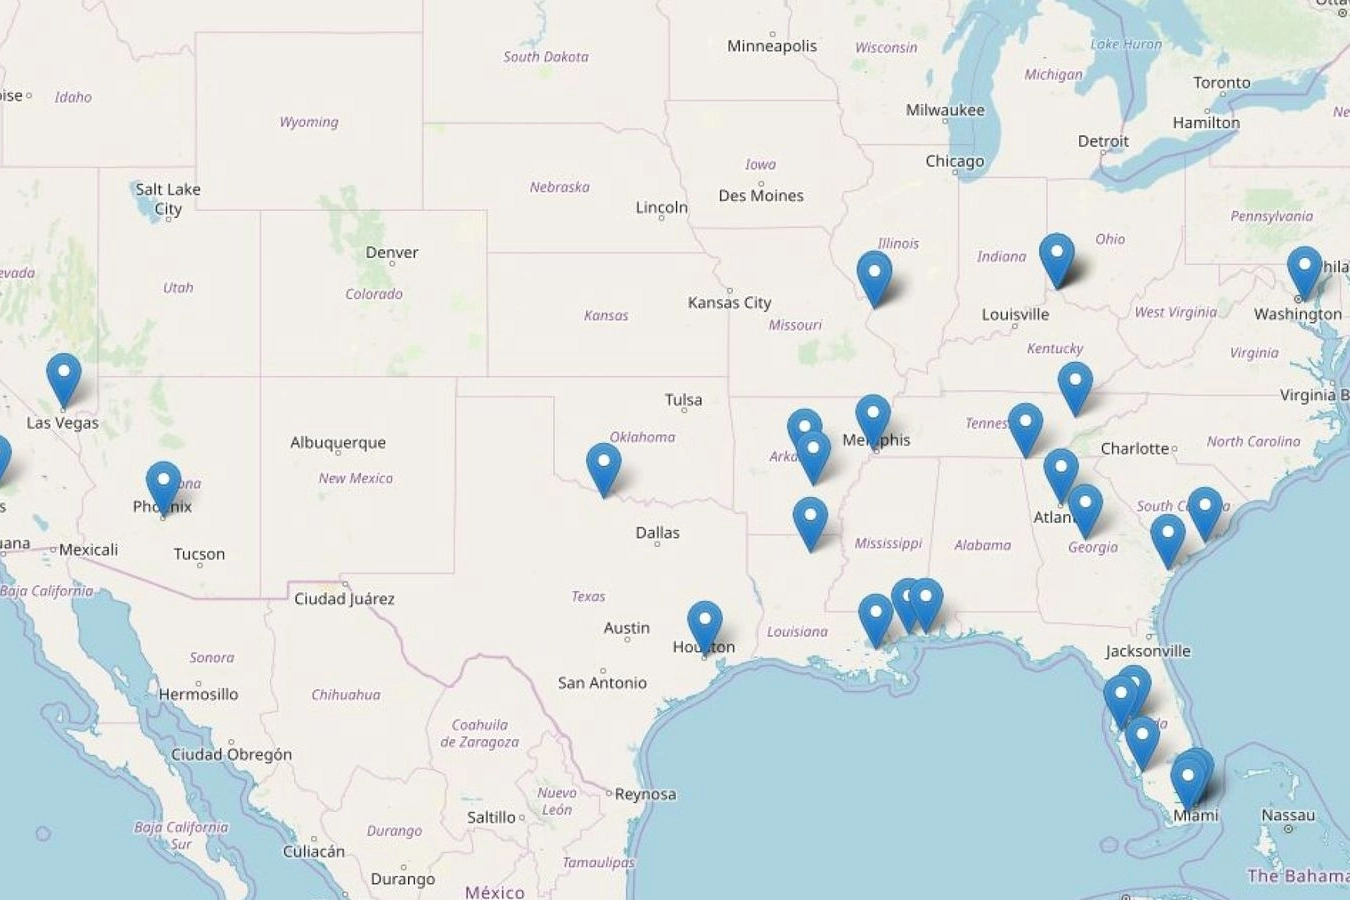 Mappa dell'Fbi evidenzia i luoghi dove sono stati commessi i delitti